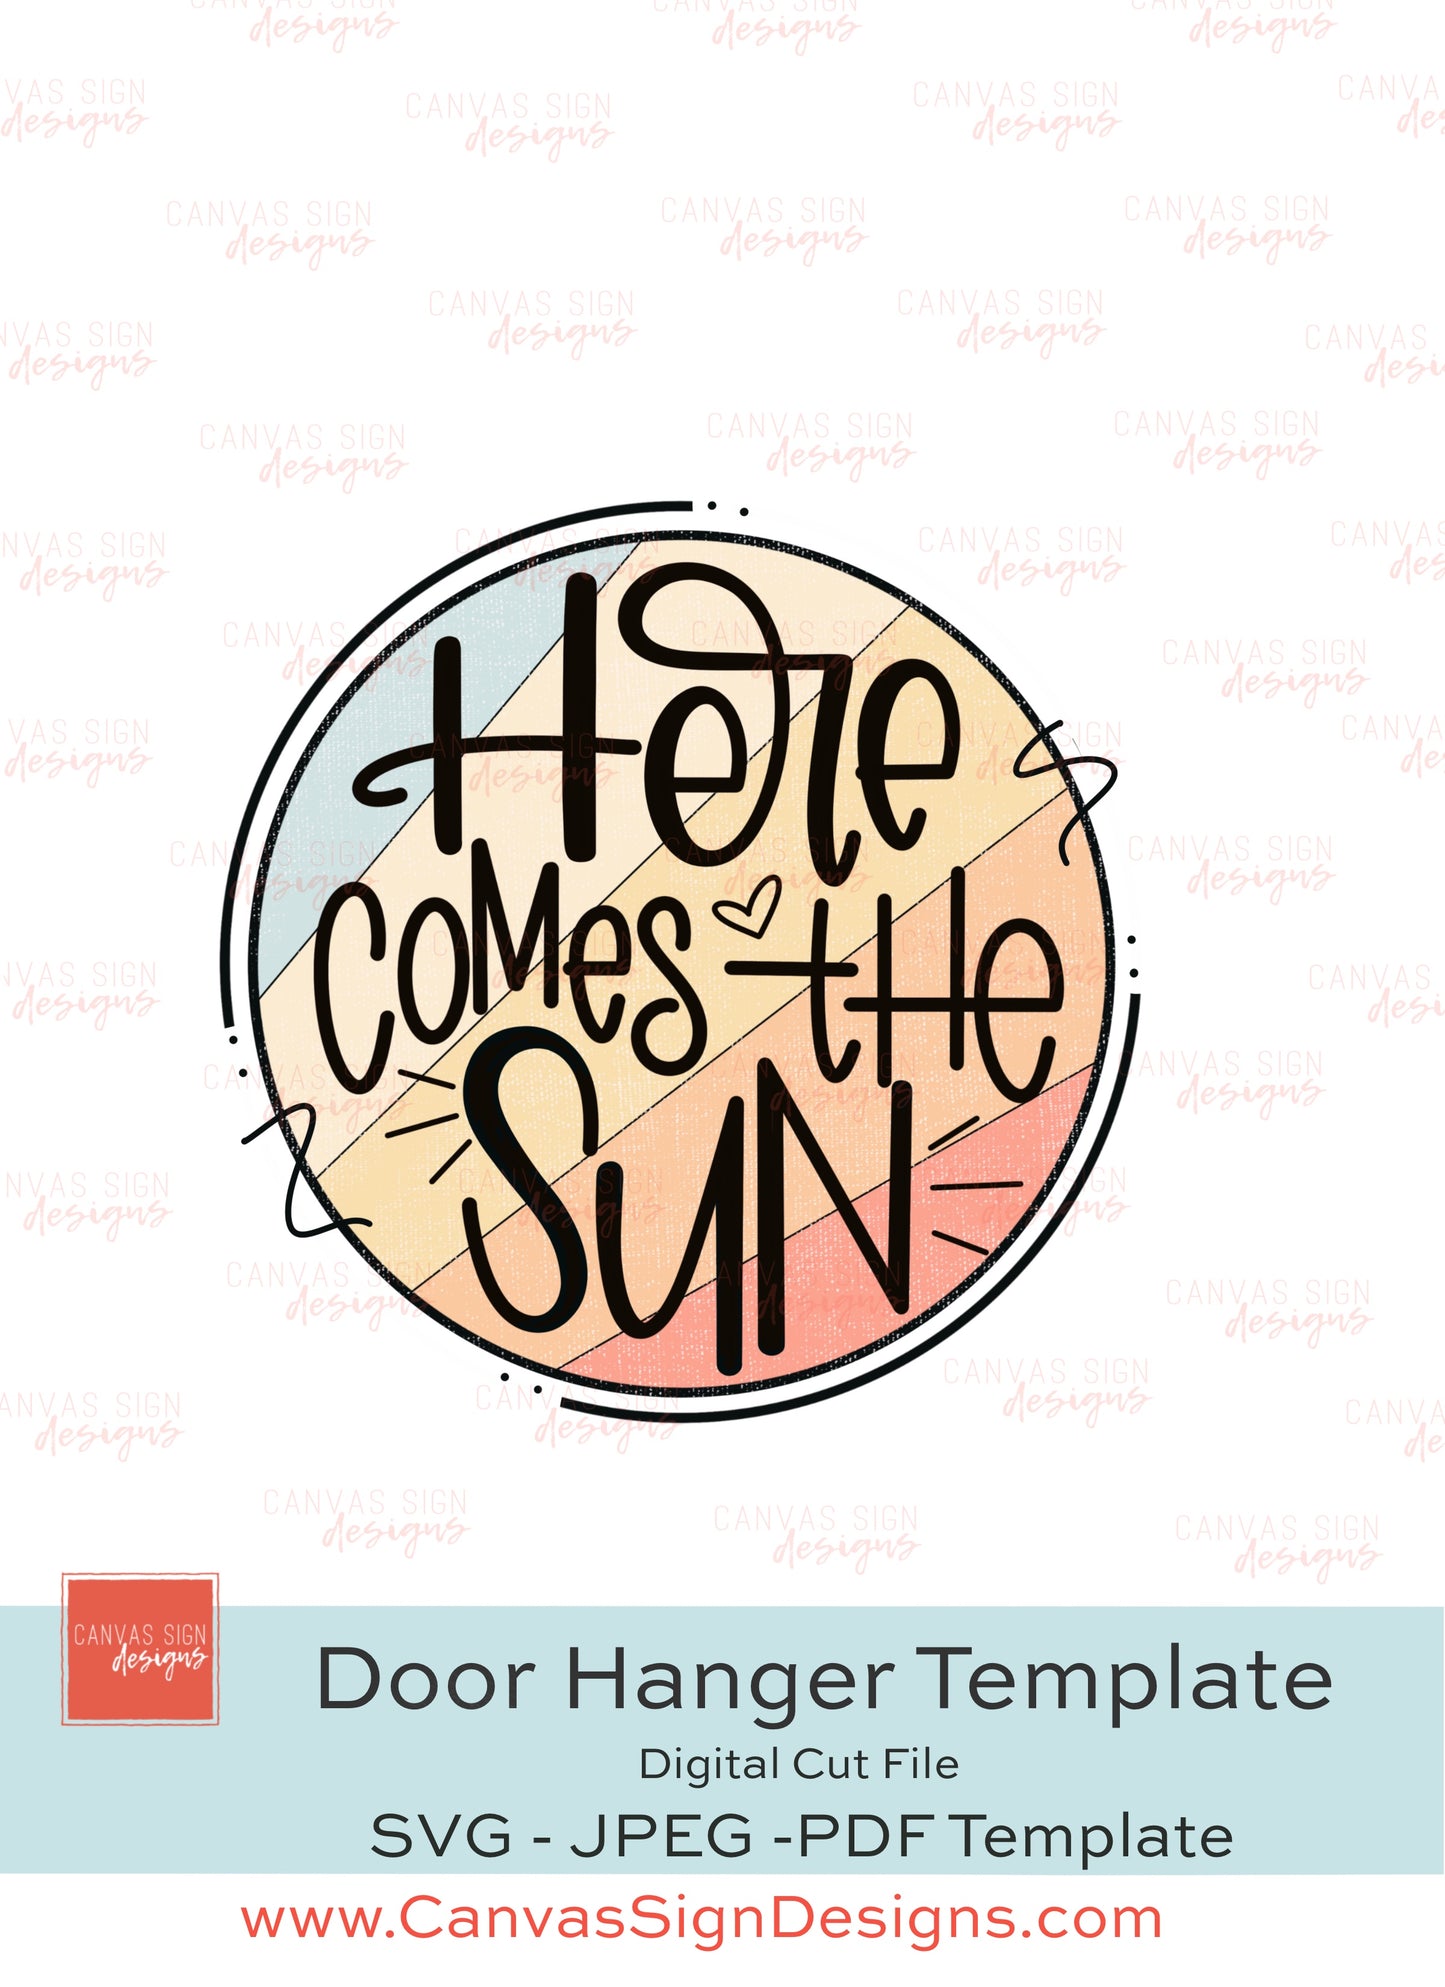 Here Comes the Sun Door Hanger Template